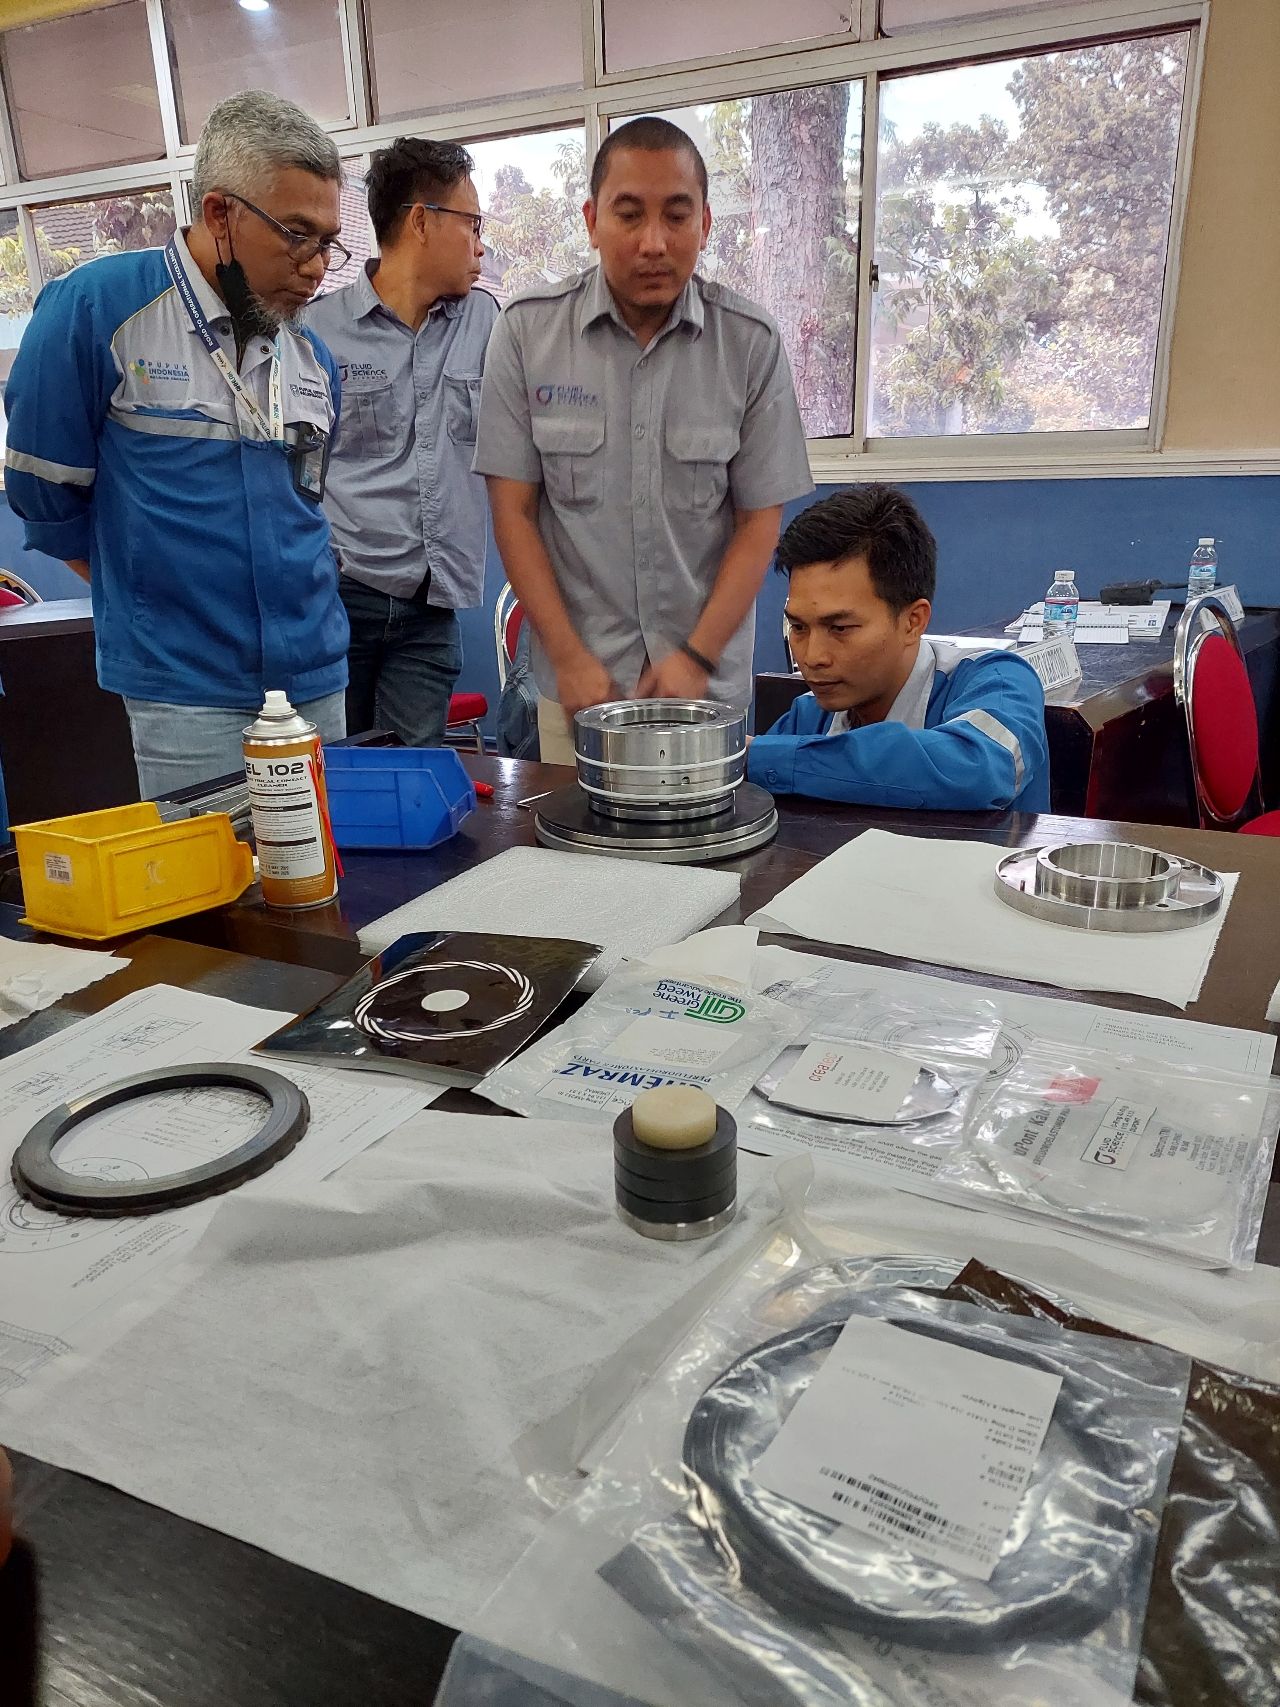 Dry Gas Seal Training to PUSRI Palembang (Batch 2)